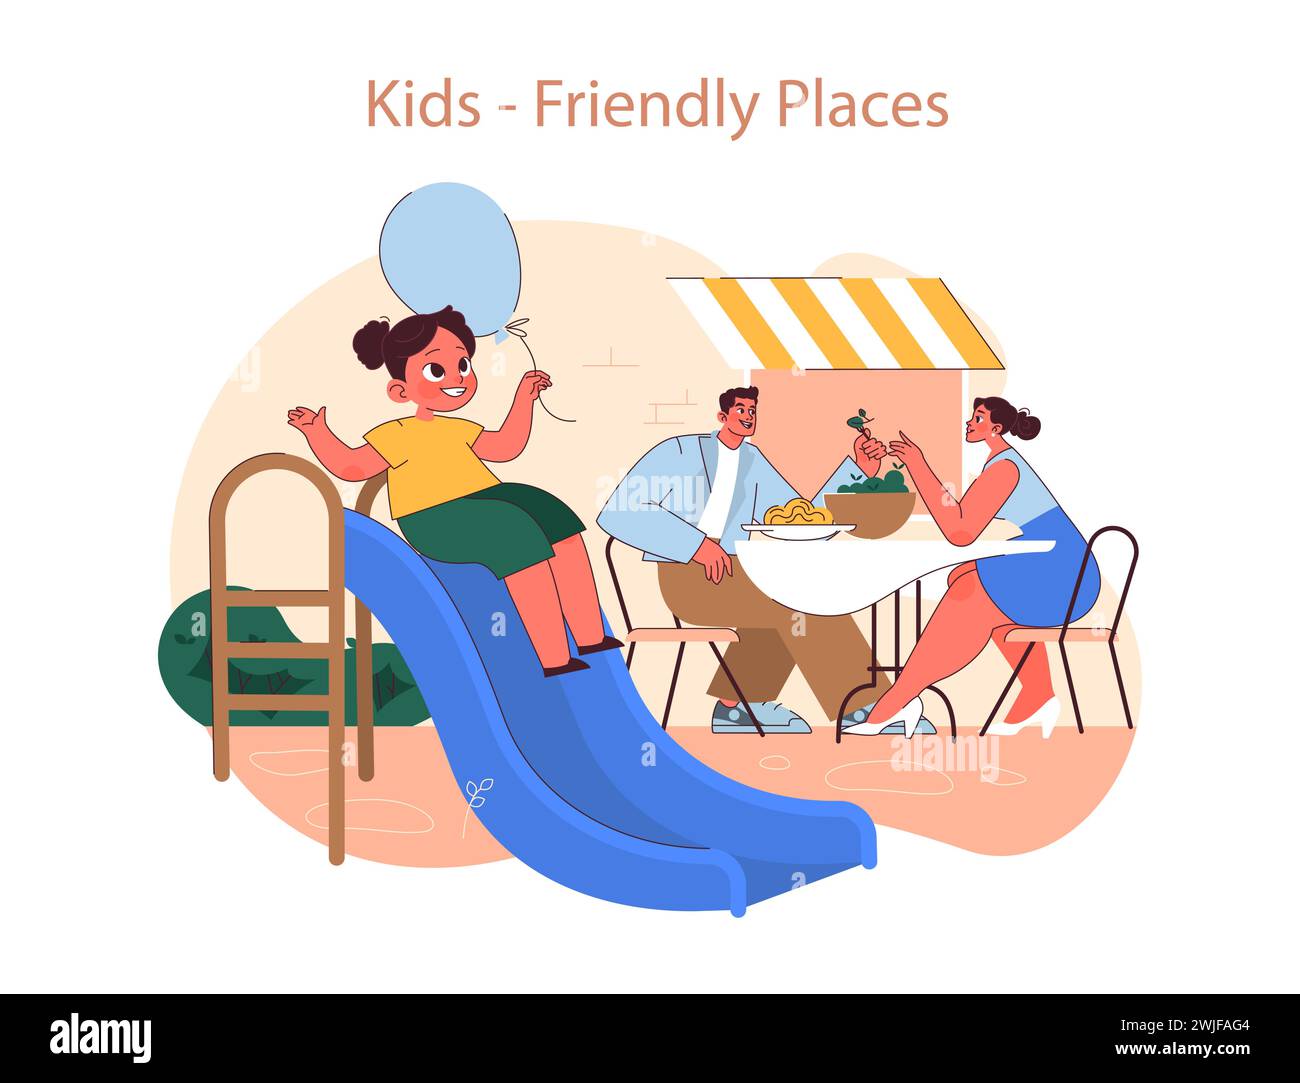 Kinderfreundliches Places Konzept. Eine lebendige Illustration, die ein fröhliches Familienessen in einem Restaurant mit Kinderspielplatz zeigt. Stock Vektor